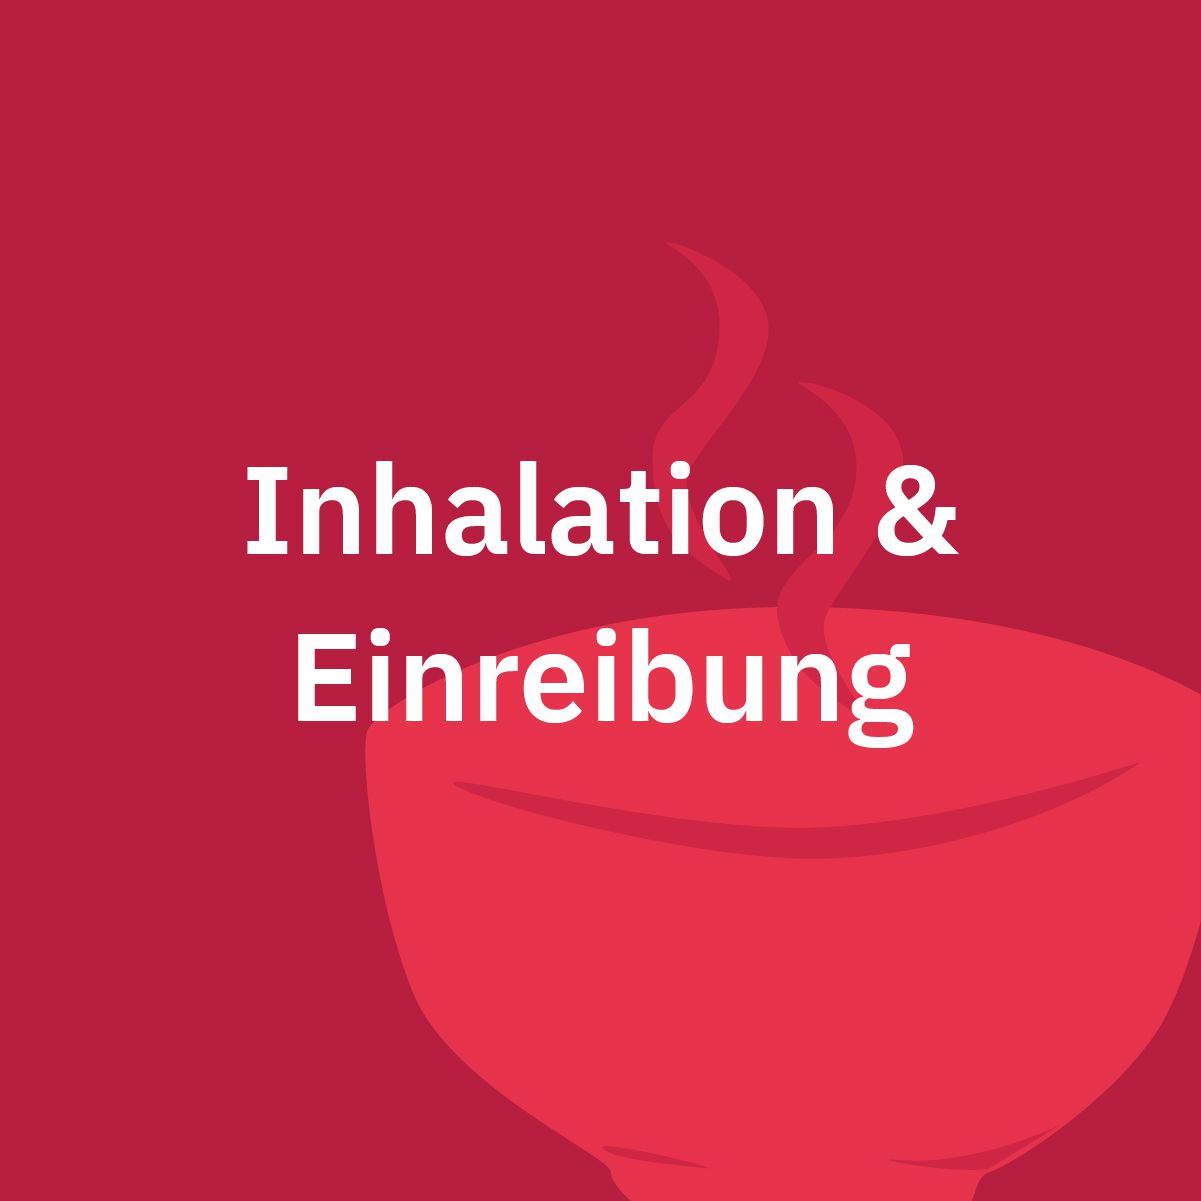 Inhalation & Einreibung